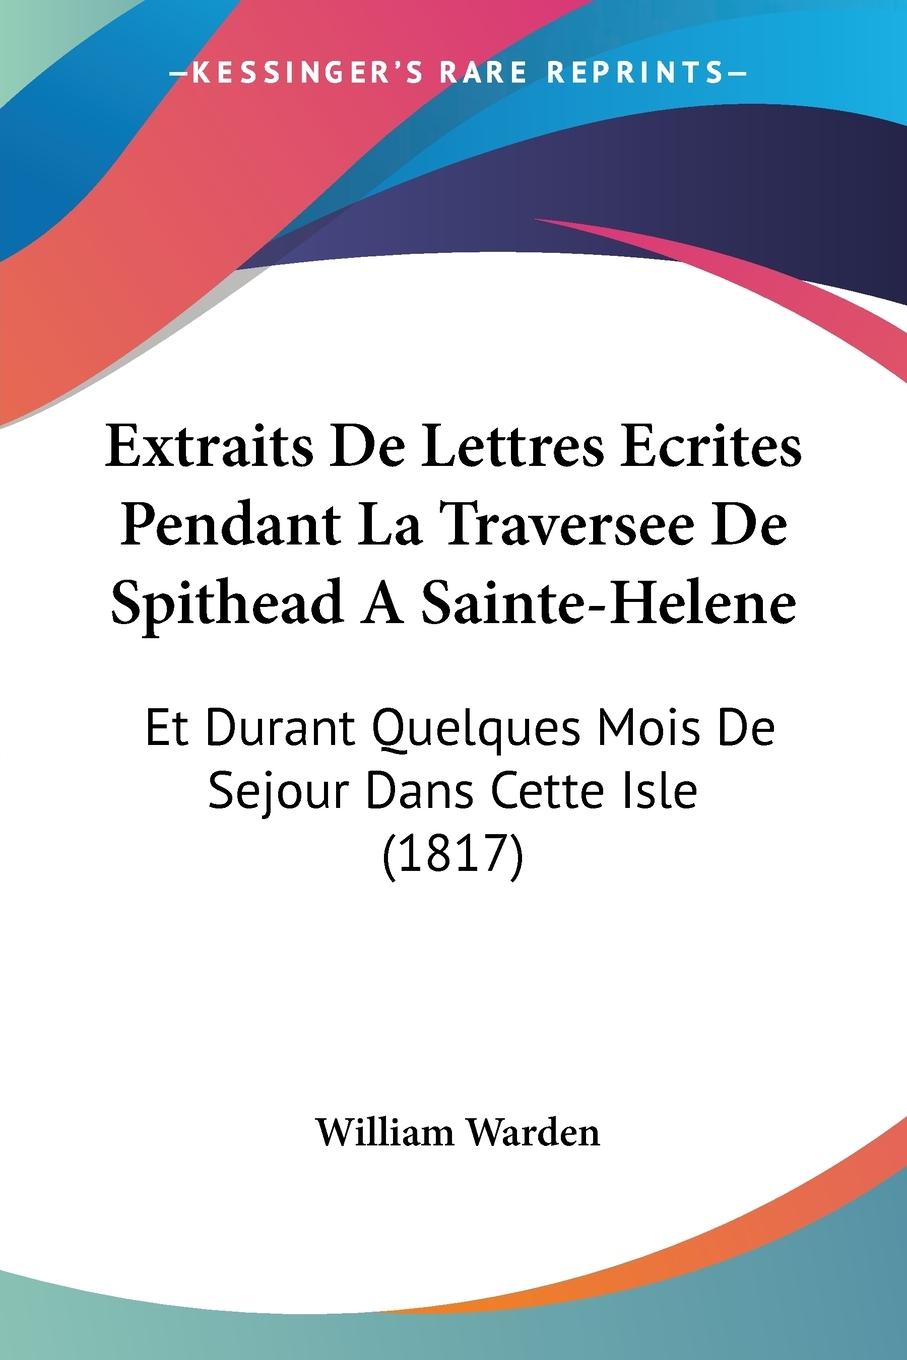 Extraits De Lettres Ecrites Pendant La Traversee De Spithead A Sainte-Helene - Warden, William